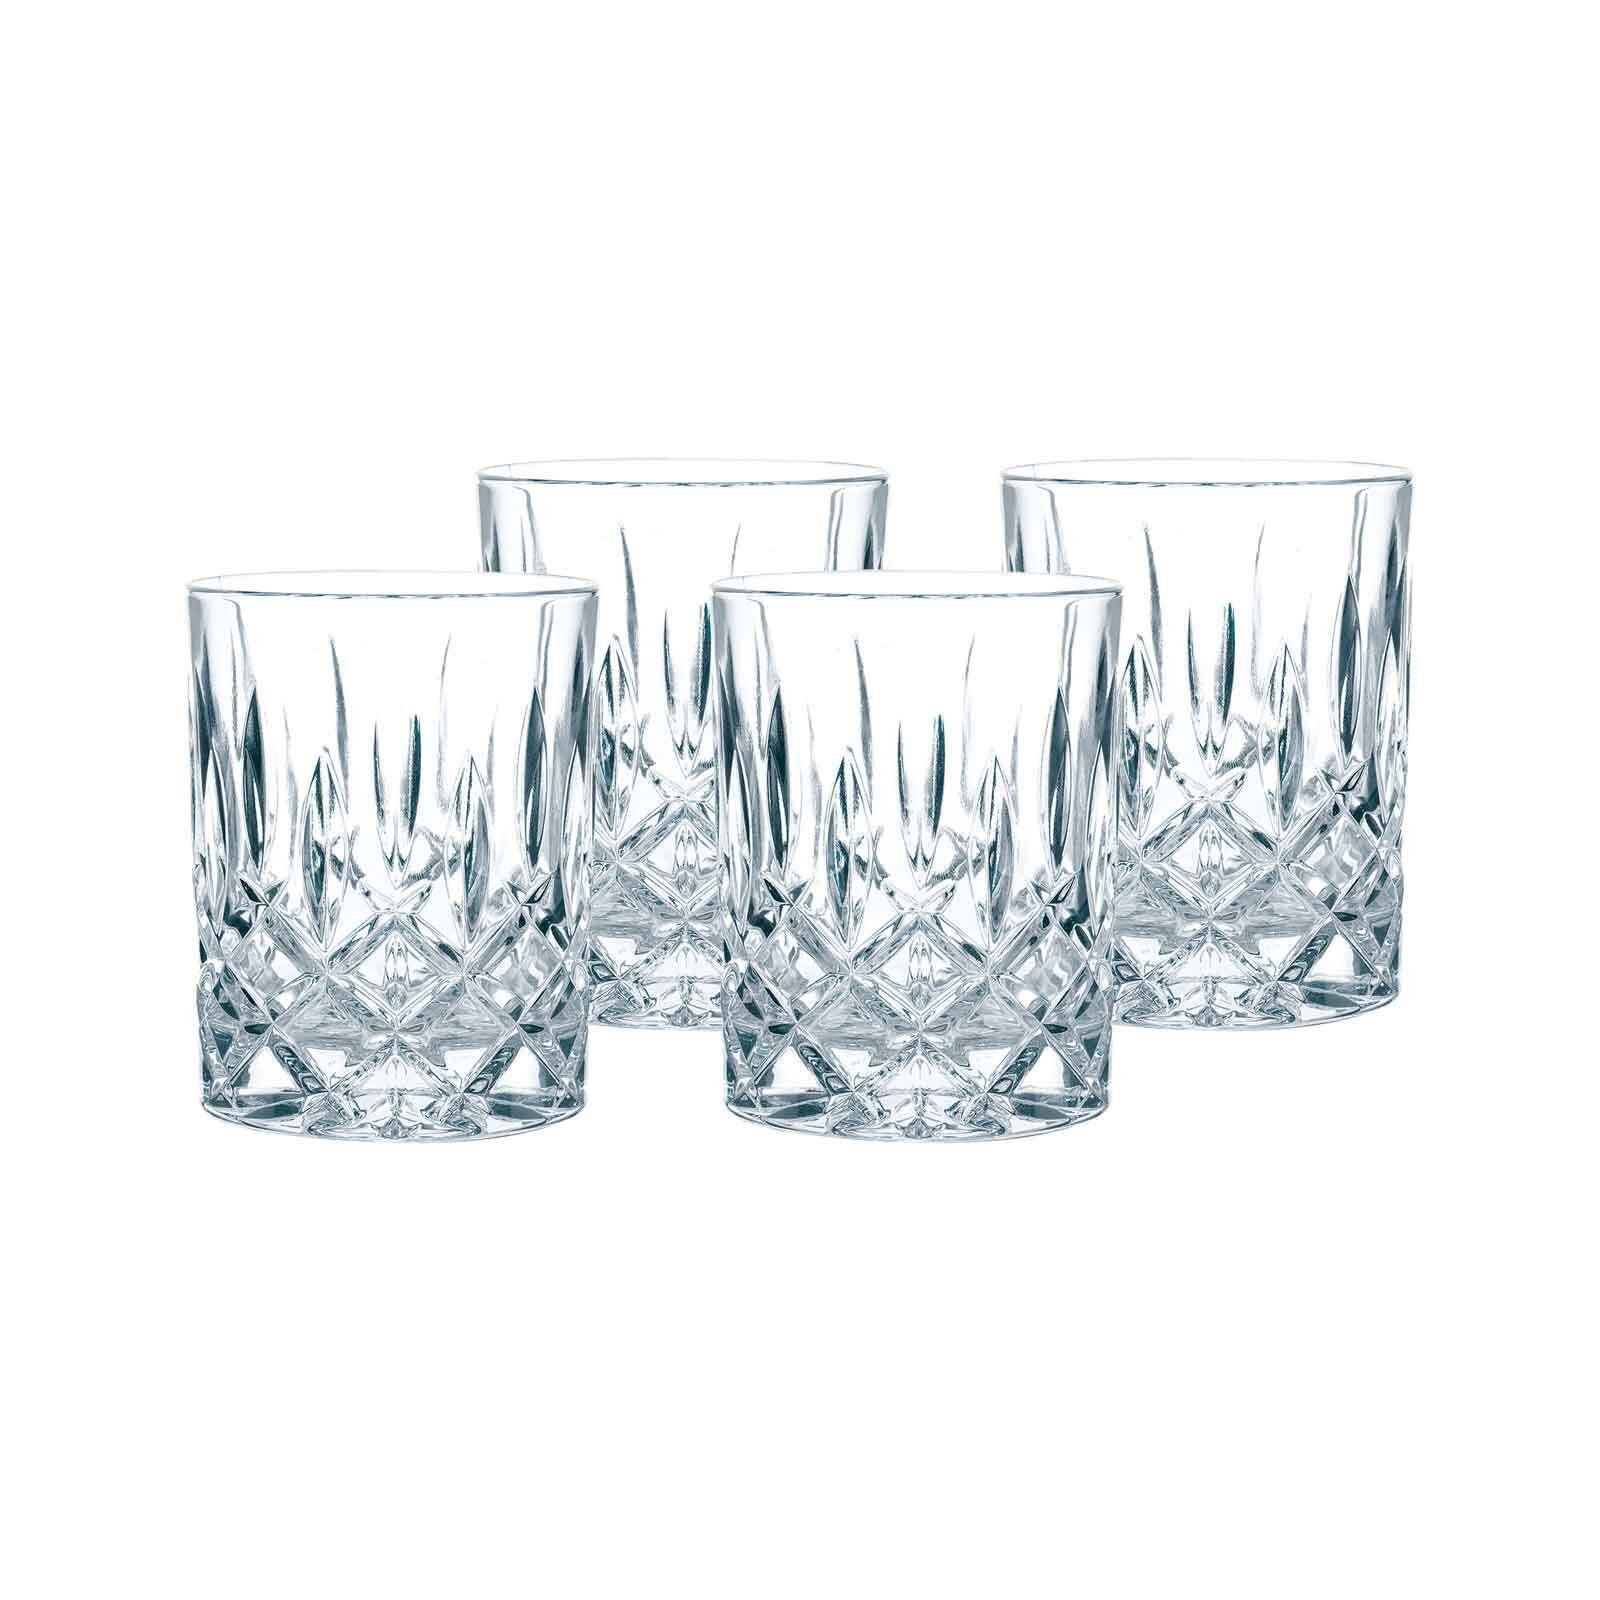 Nachtmann Whiskyglas Noblesse Whiskygläser 295 ml 4er Set, Glas transparent